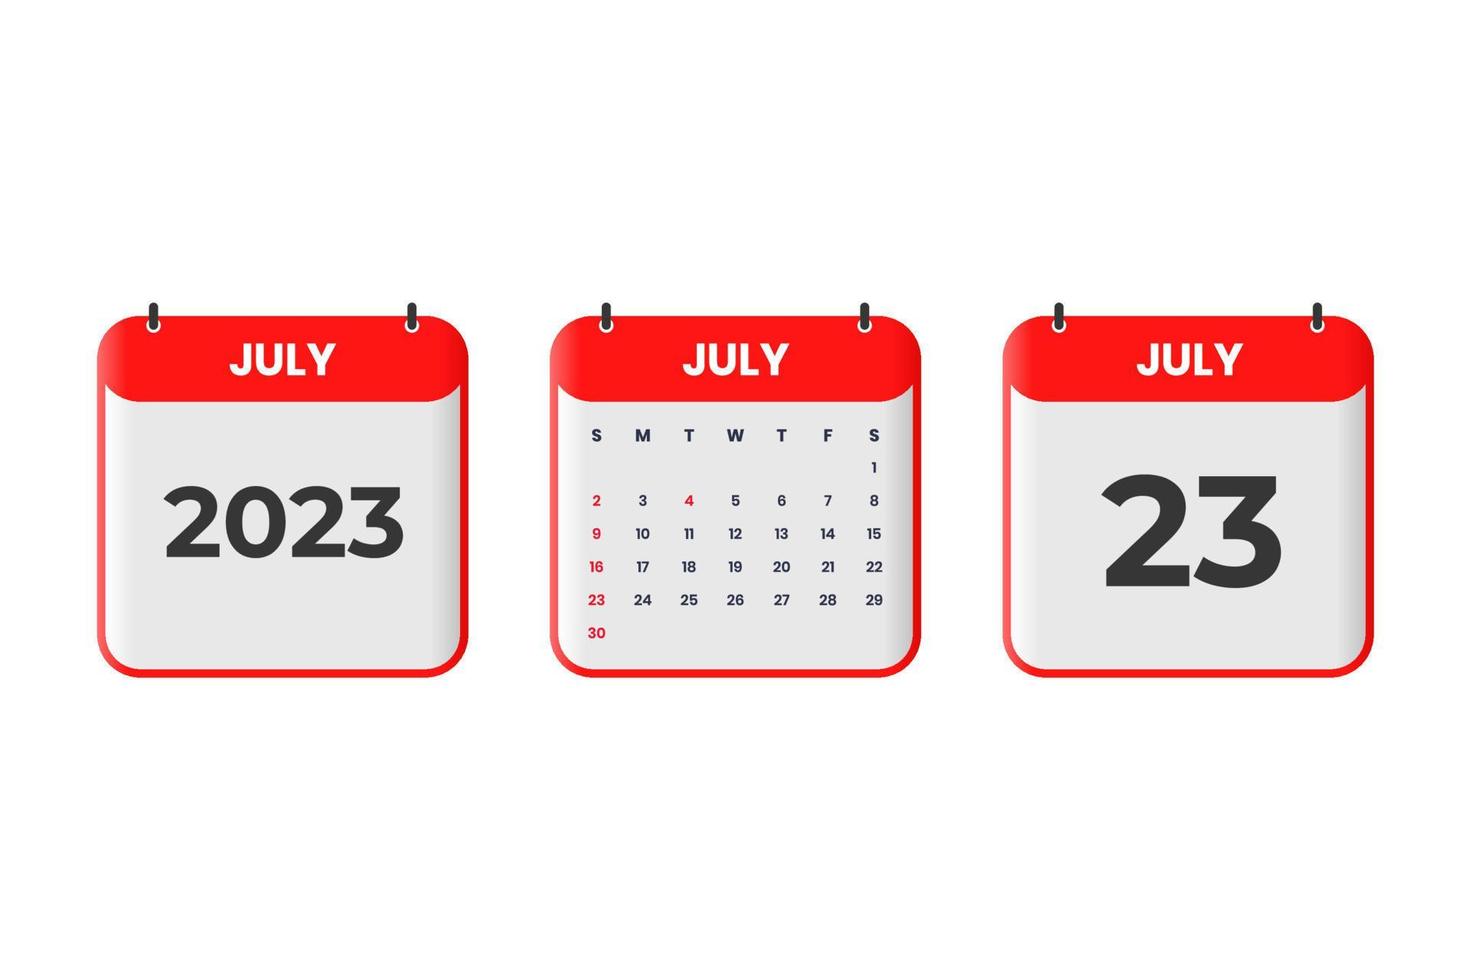 conception du calendrier de juillet 2023. 23 juillet 2023 icône de calendrier pour l'horaire, le rendez-vous, le concept de date importante vecteur